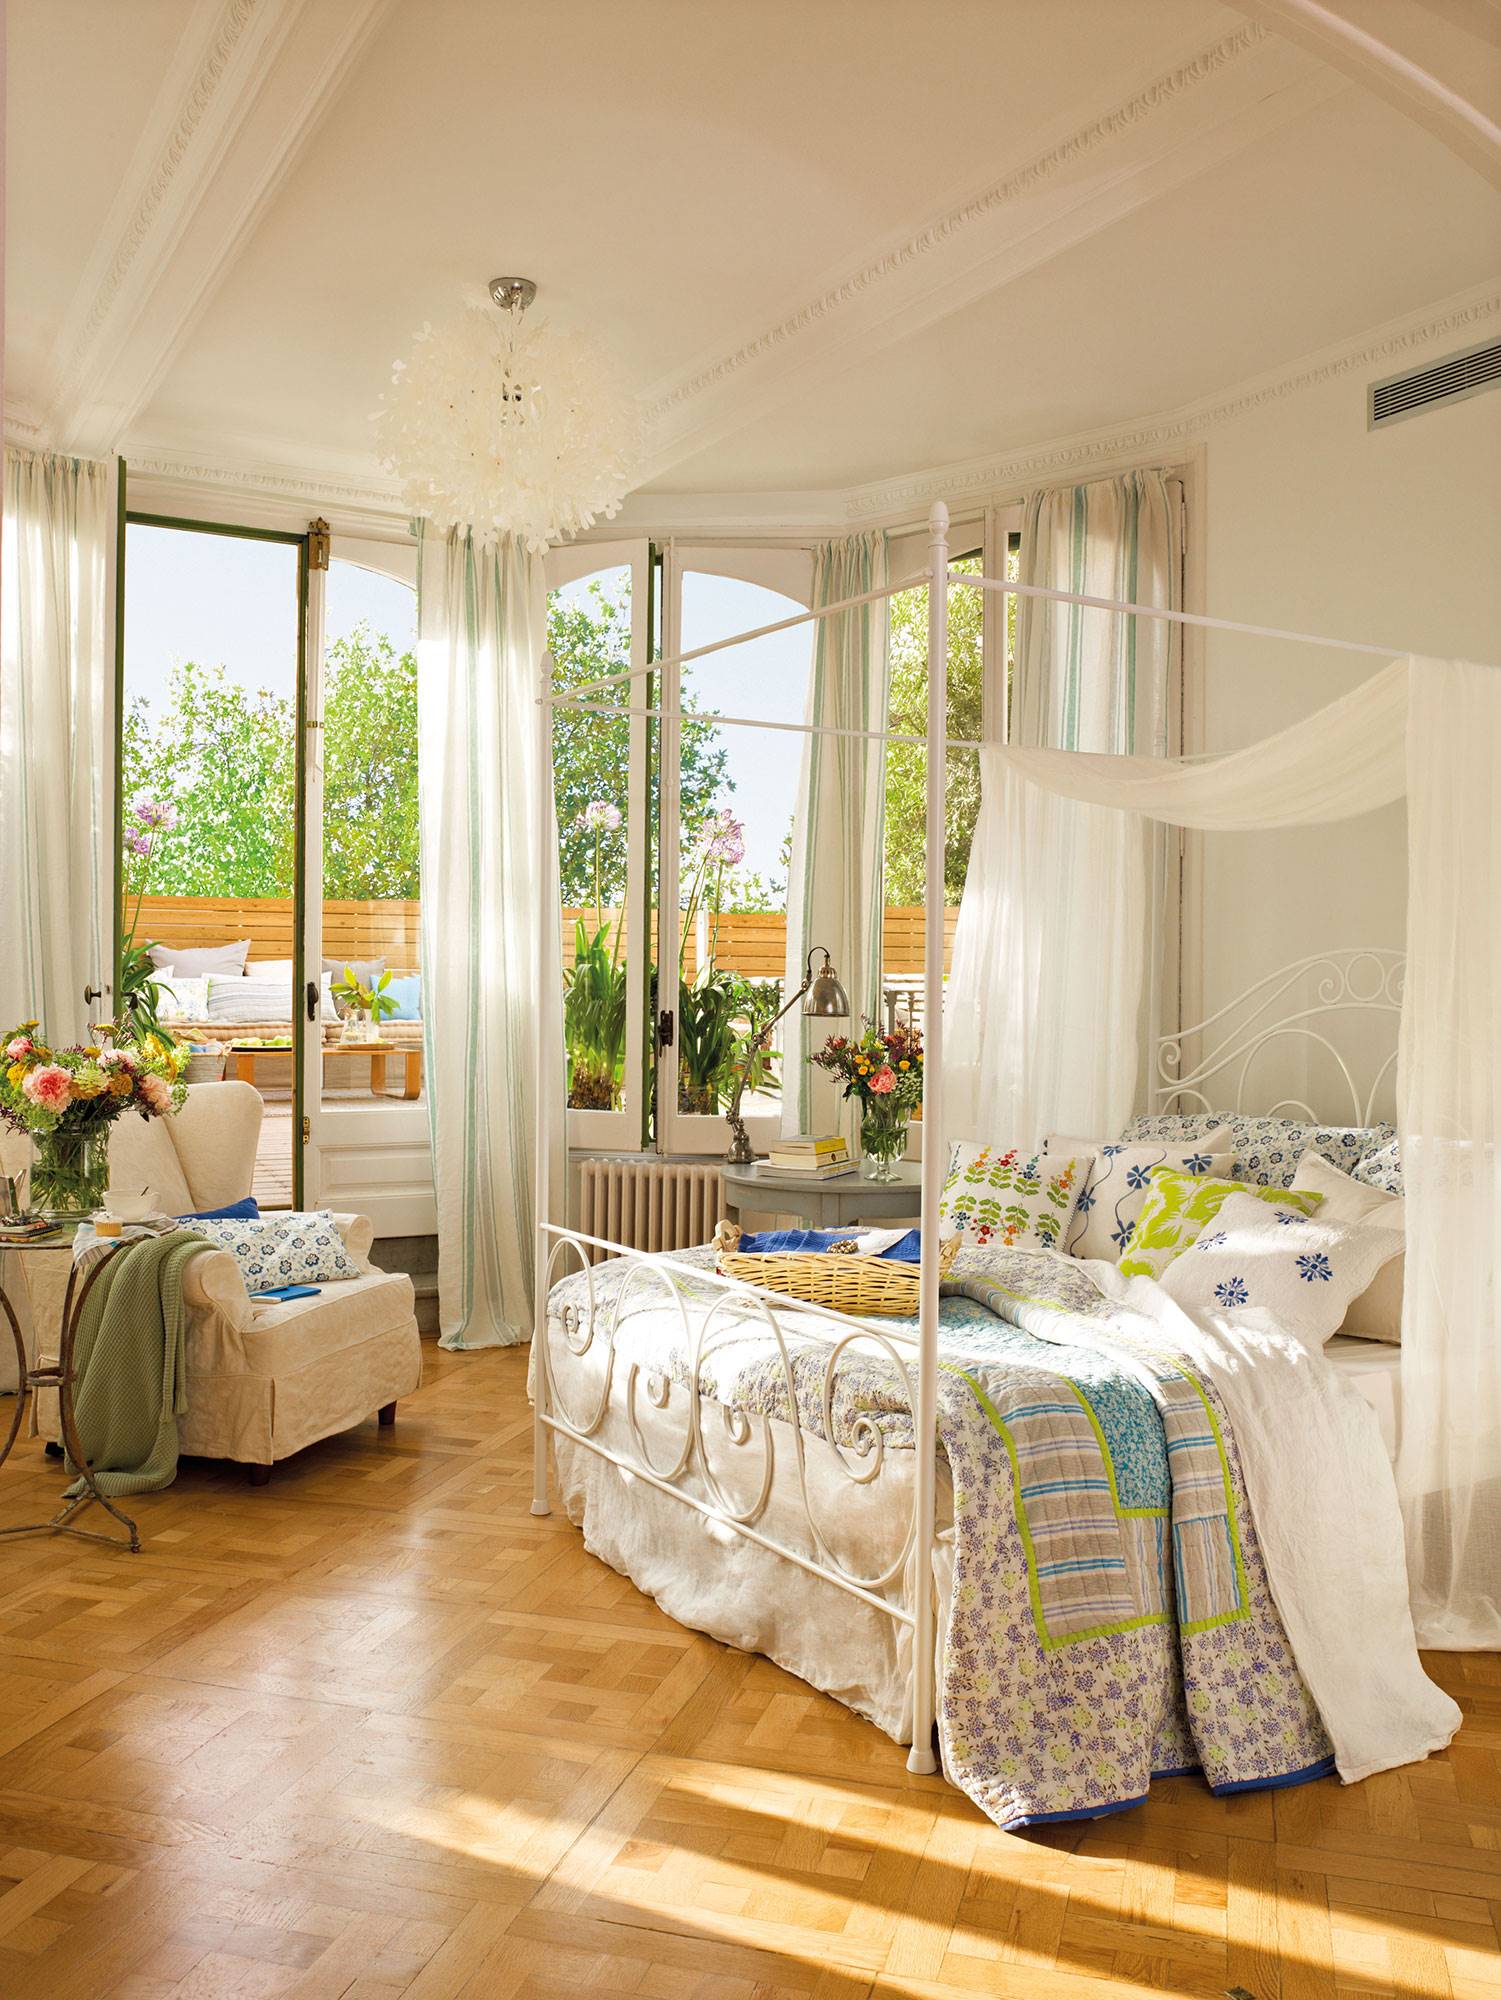 Dormitorio clásico con cama con dosel, terraza y ropa de cama con flores. 